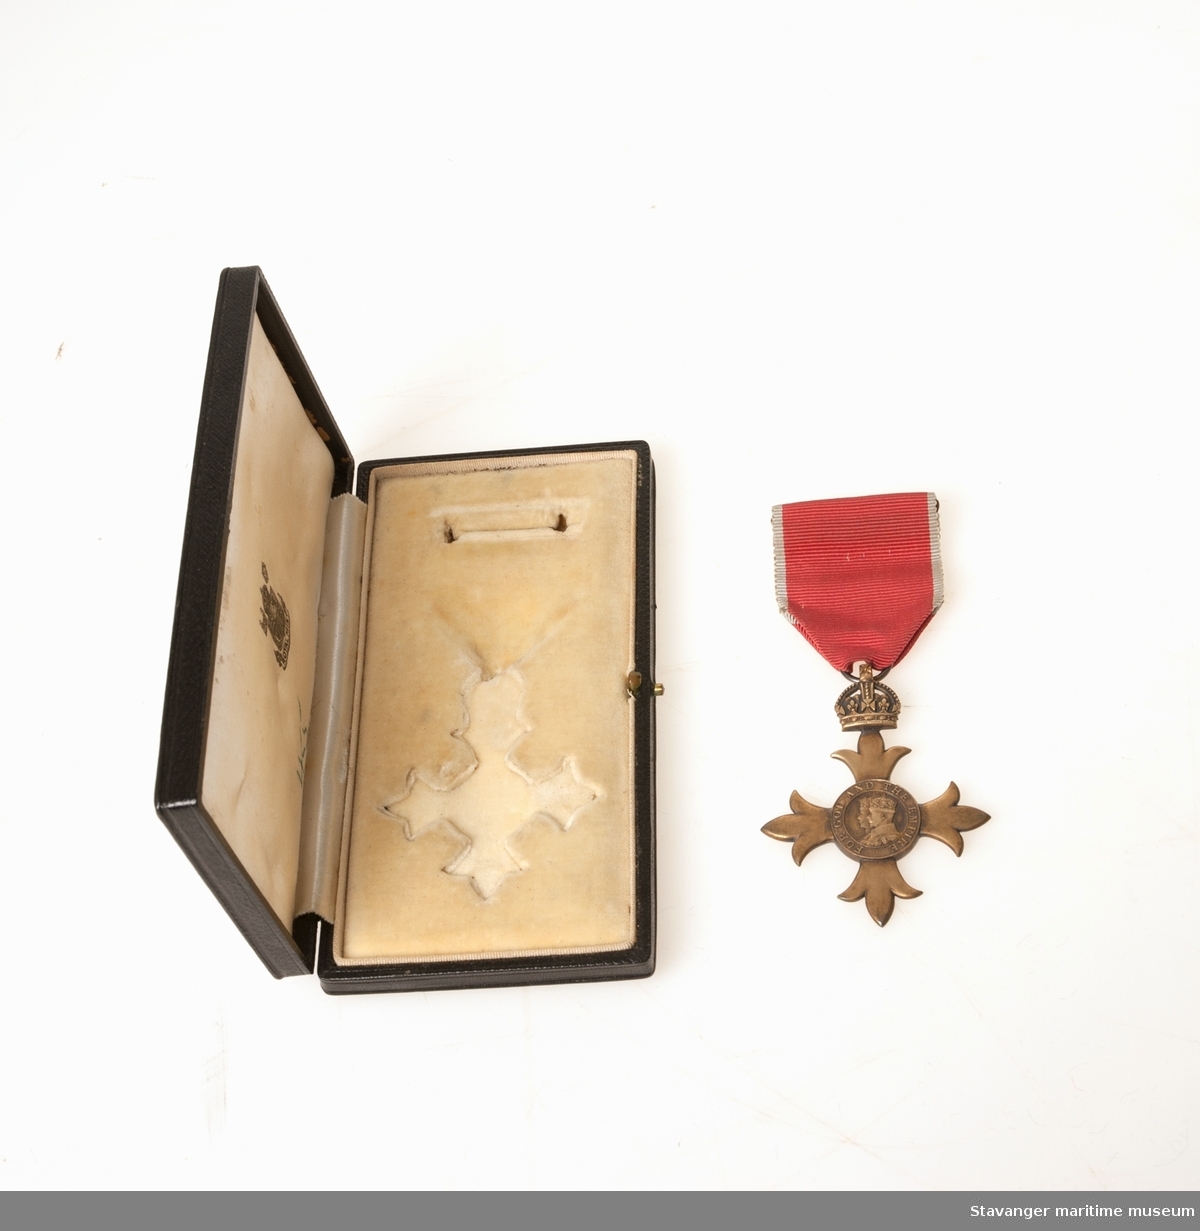 The Most Excellent Order of the British Empire, OBE medalje, i et etui sammen med et brev fra 1942 og en bruksanvisning på hvordan en skal bruke medaljen.